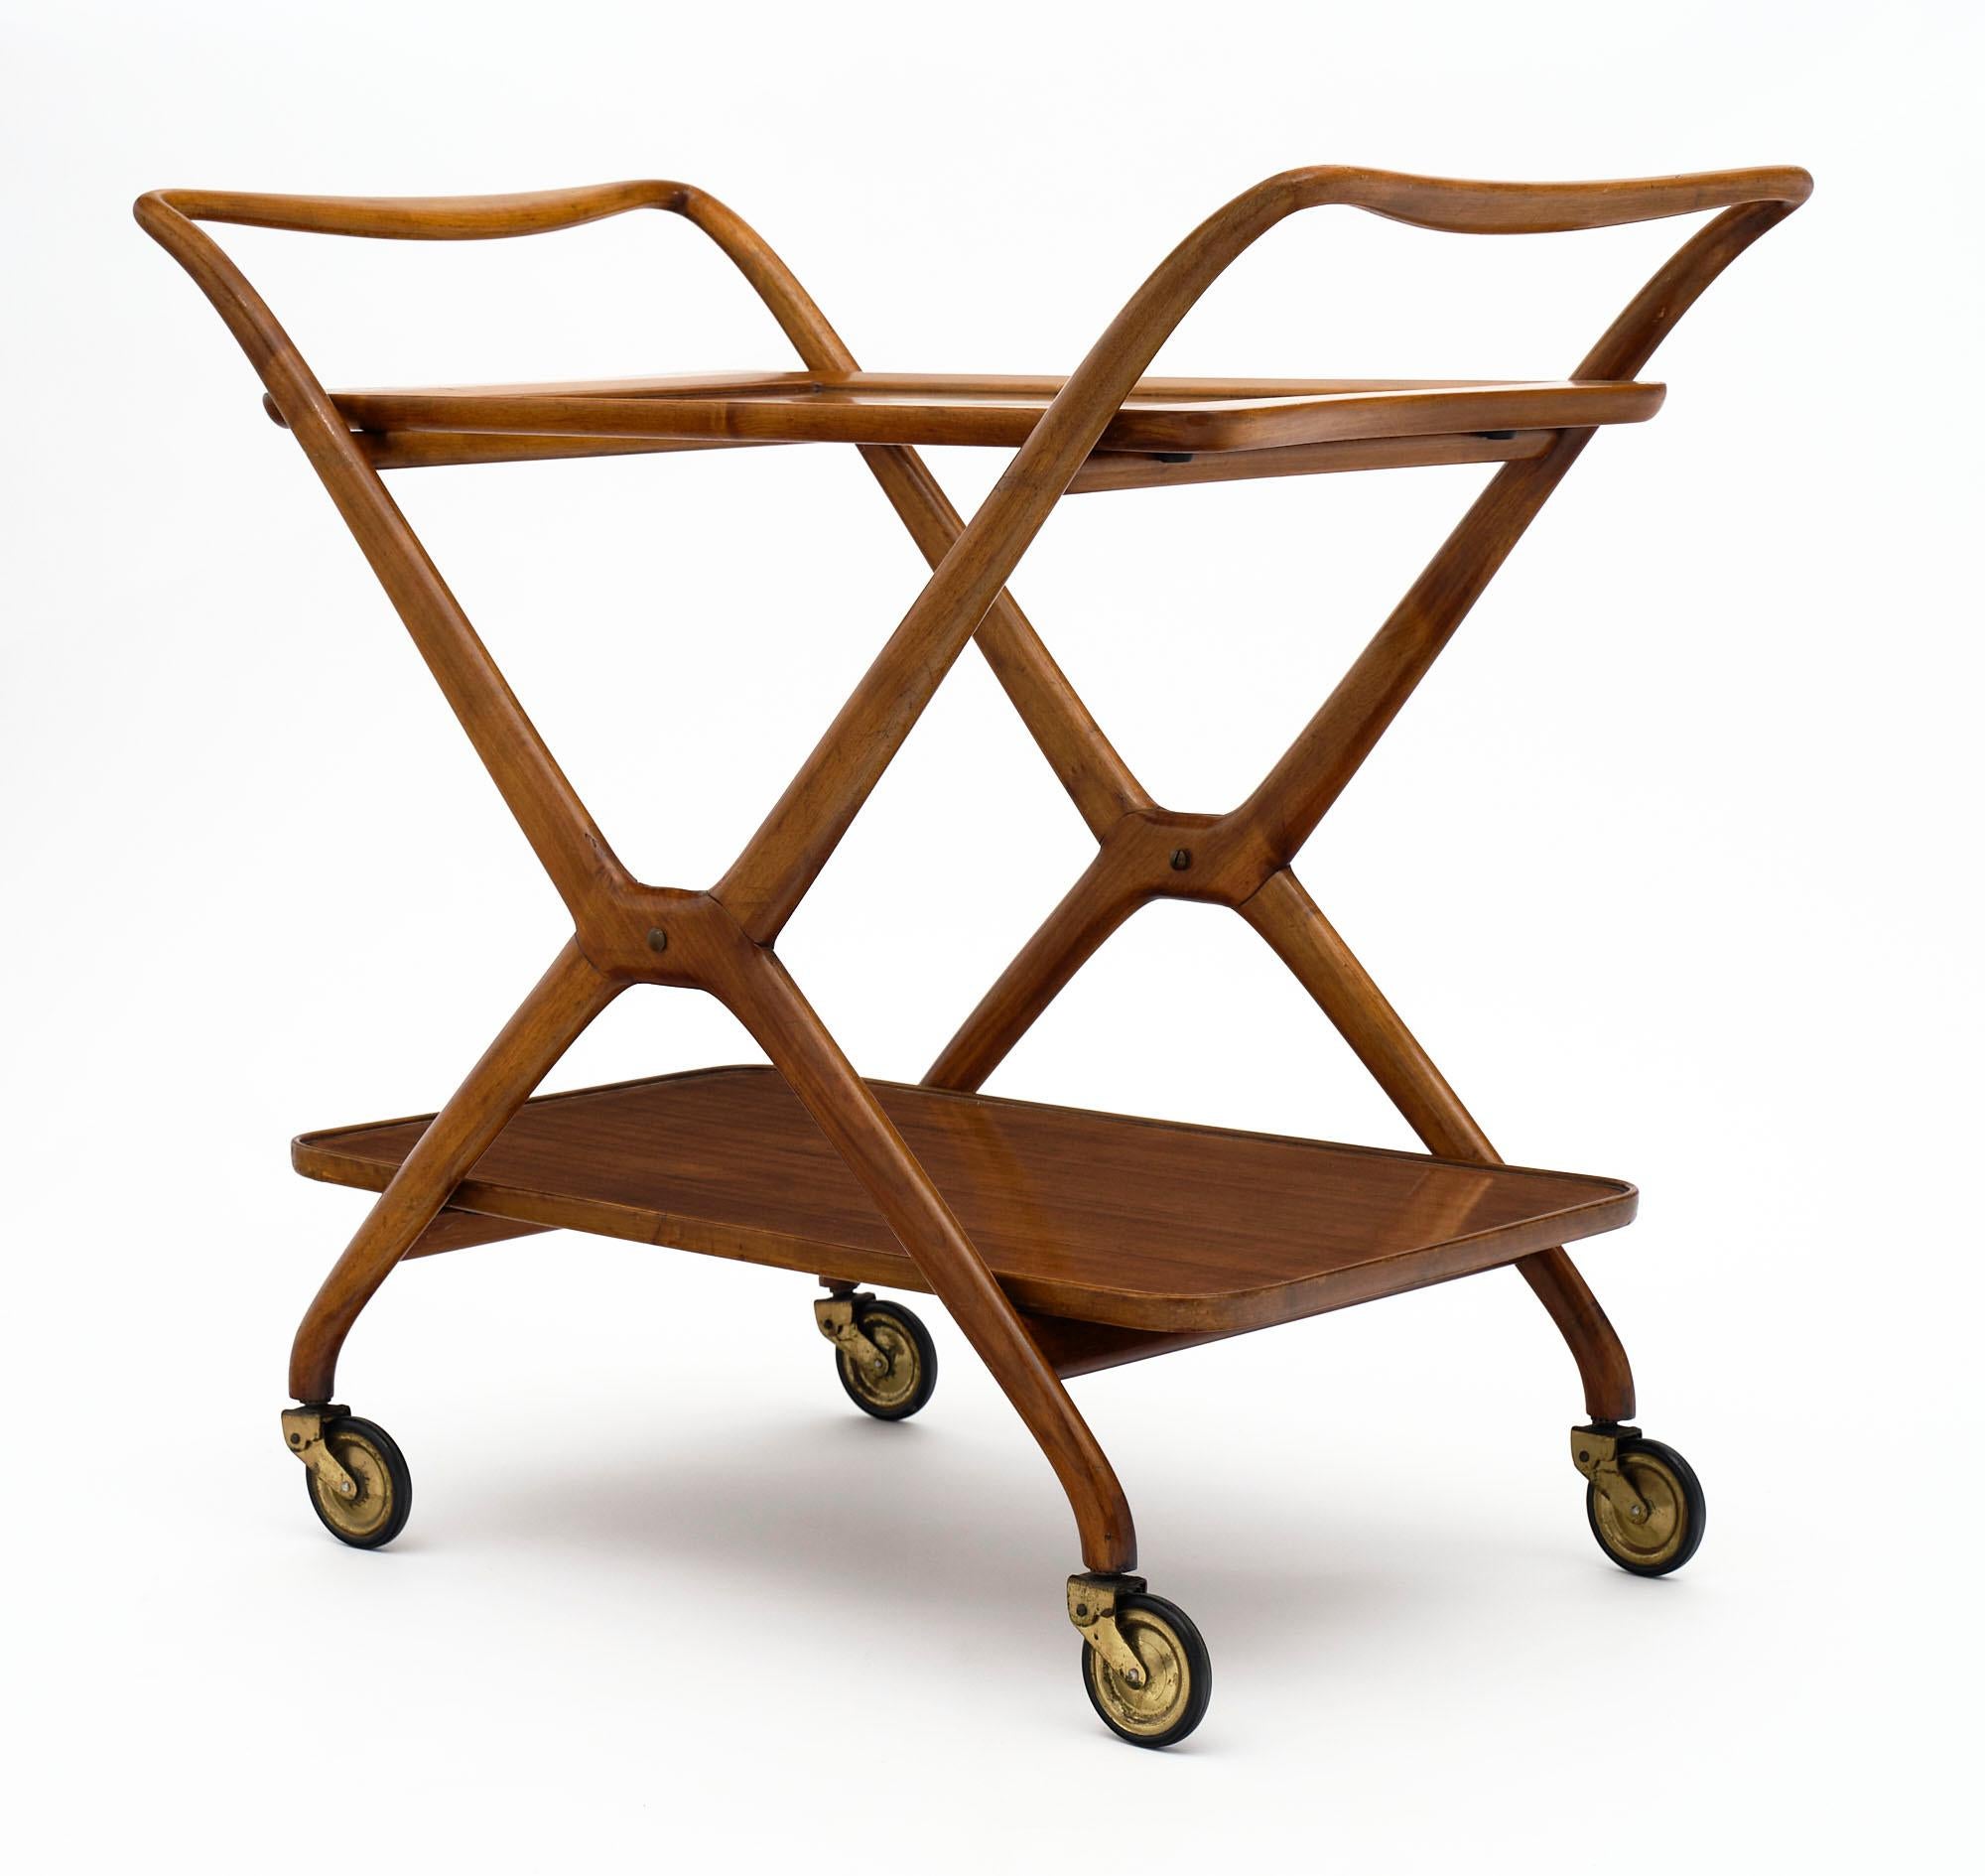 Le chariot à thé modèle 67 est caractérisé par une structure formée par l'union de deux éléments de support en forme de X, en bois massif, reliés en haut par un guidon façonné ; opposés et rigidifiés par des traverses placées sous les deux surfaces